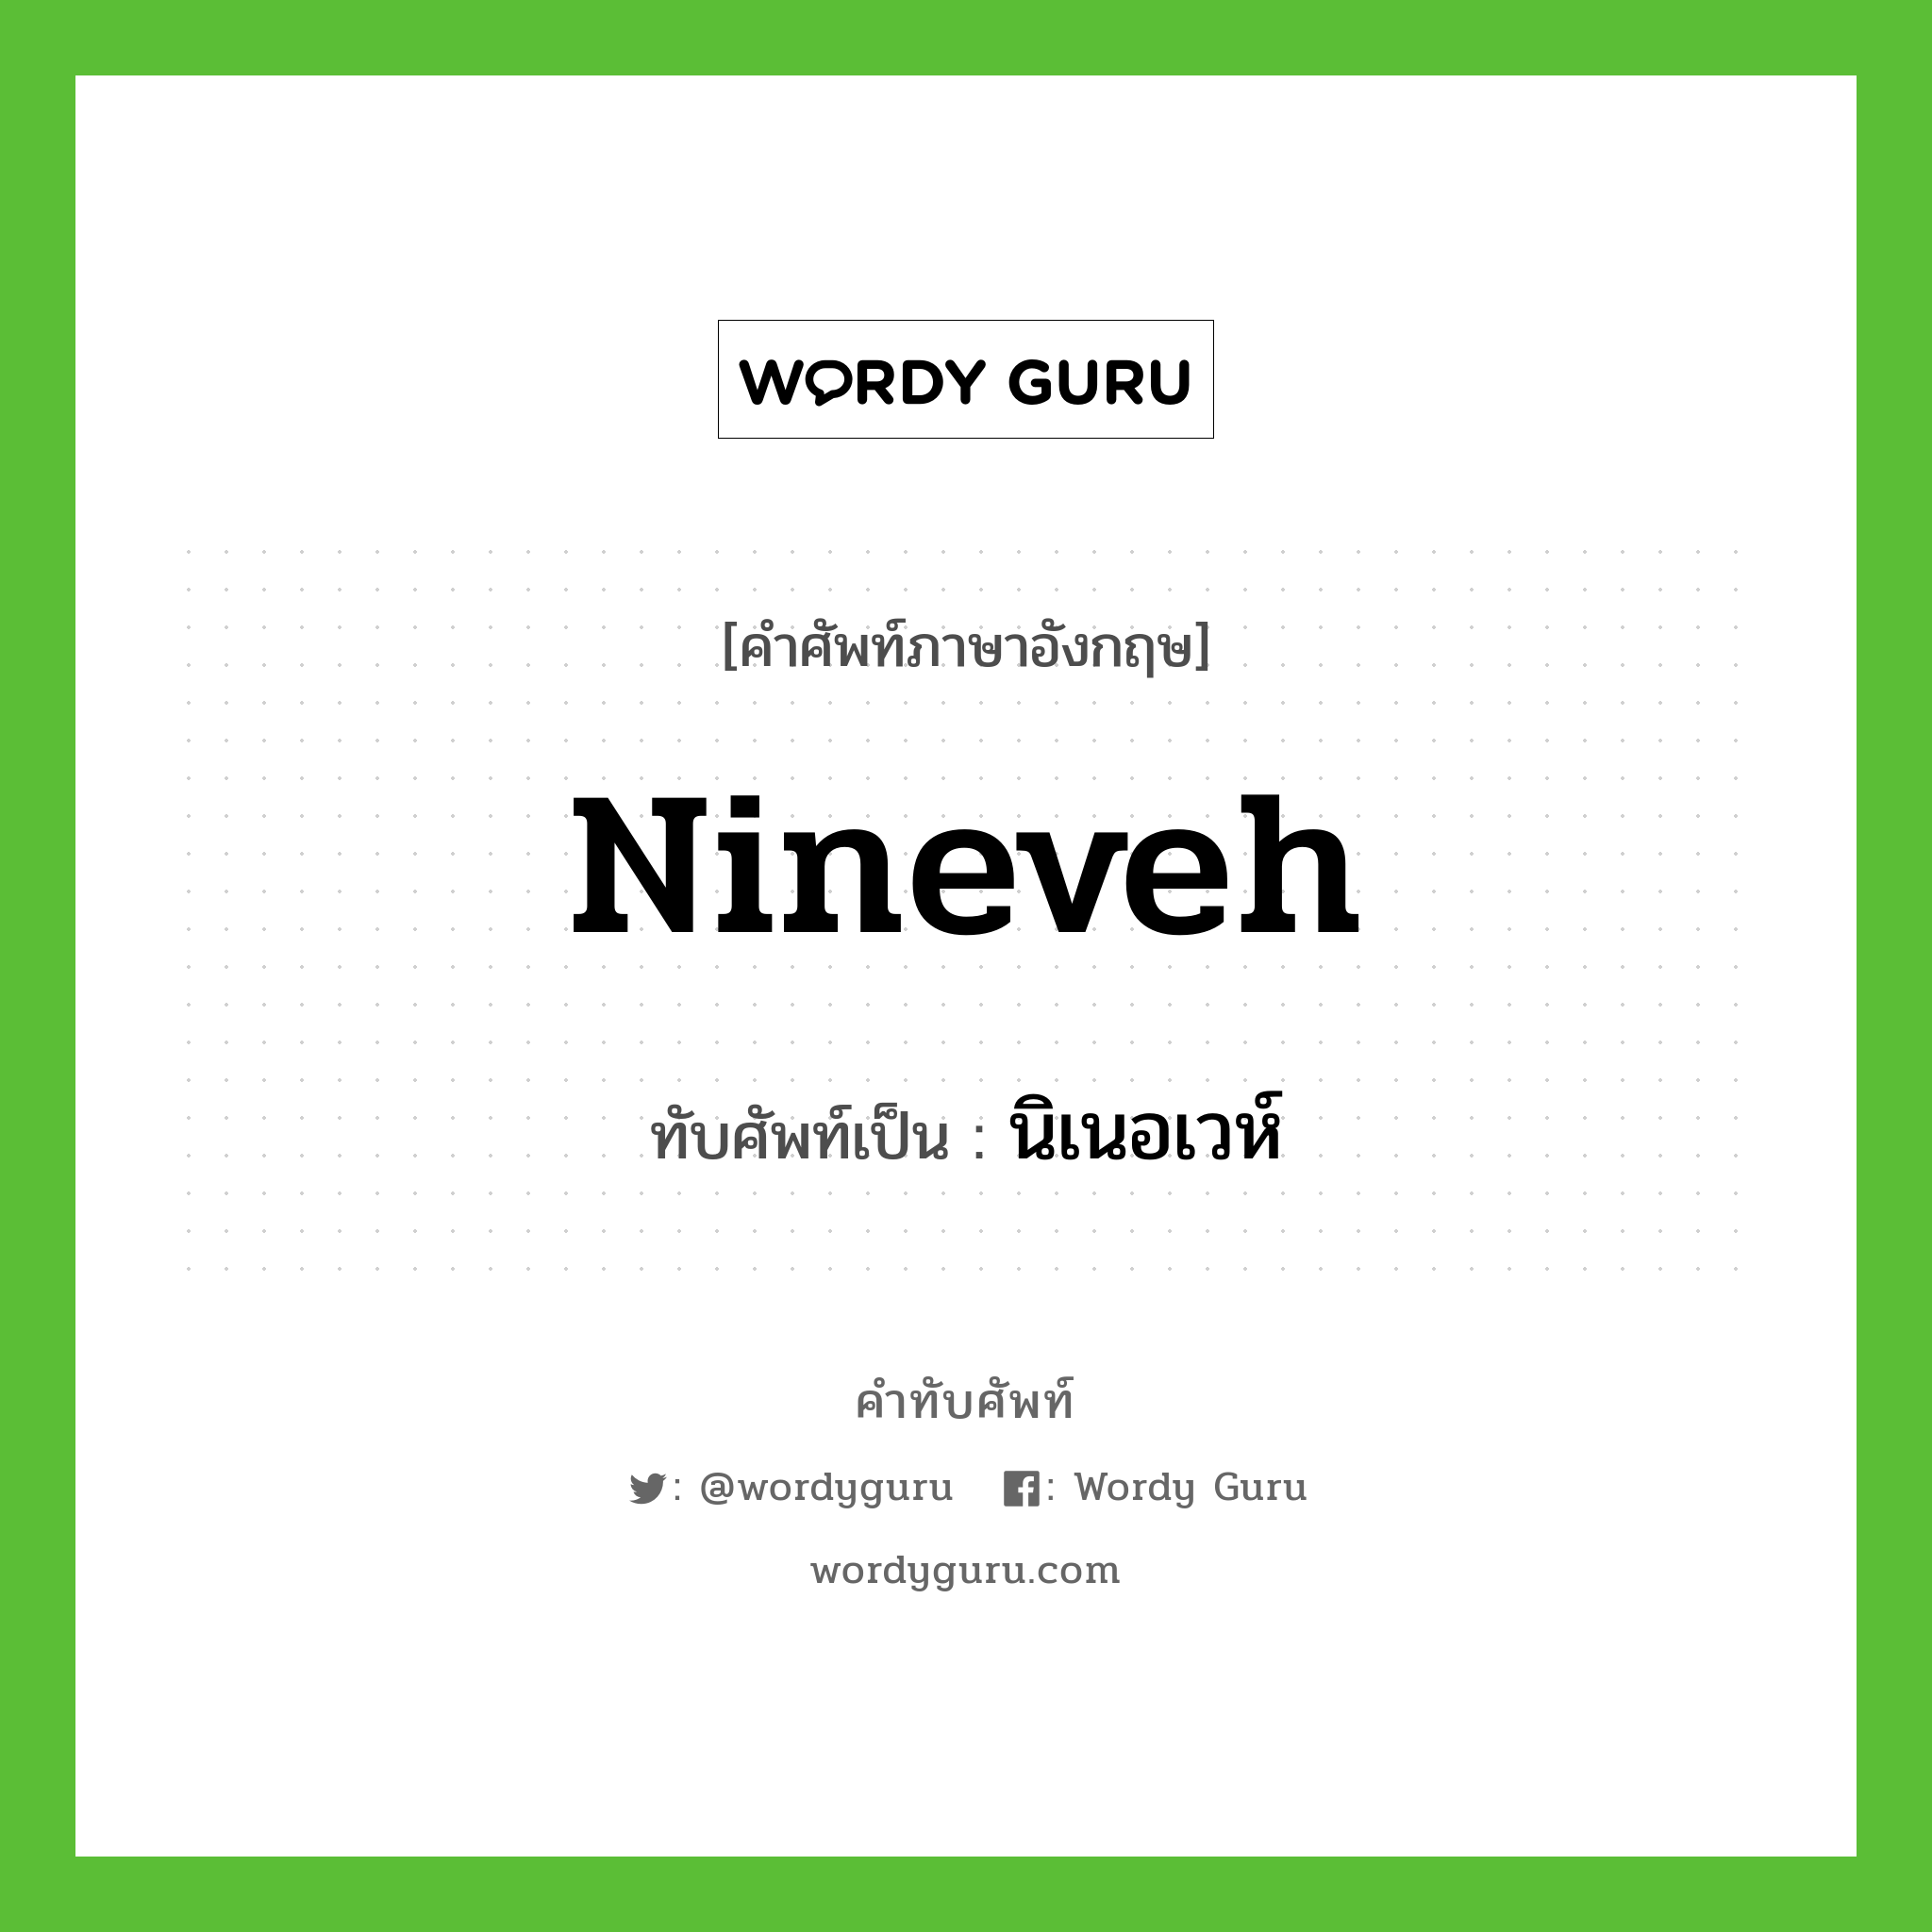 Nineveh เขียนเป็นคำไทยว่าอะไร?, คำศัพท์ภาษาอังกฤษ Nineveh ทับศัพท์เป็น นิเนอเวห์